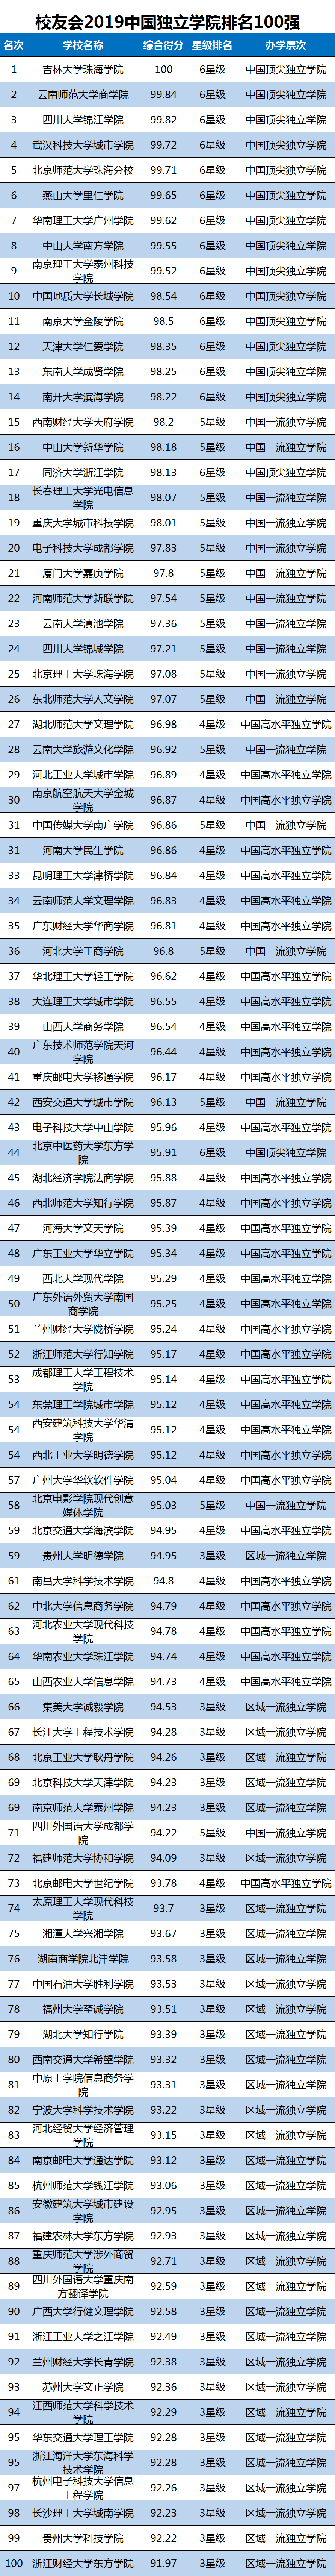 校友会2019中国大学排名、2019中国民办大学排行榜 